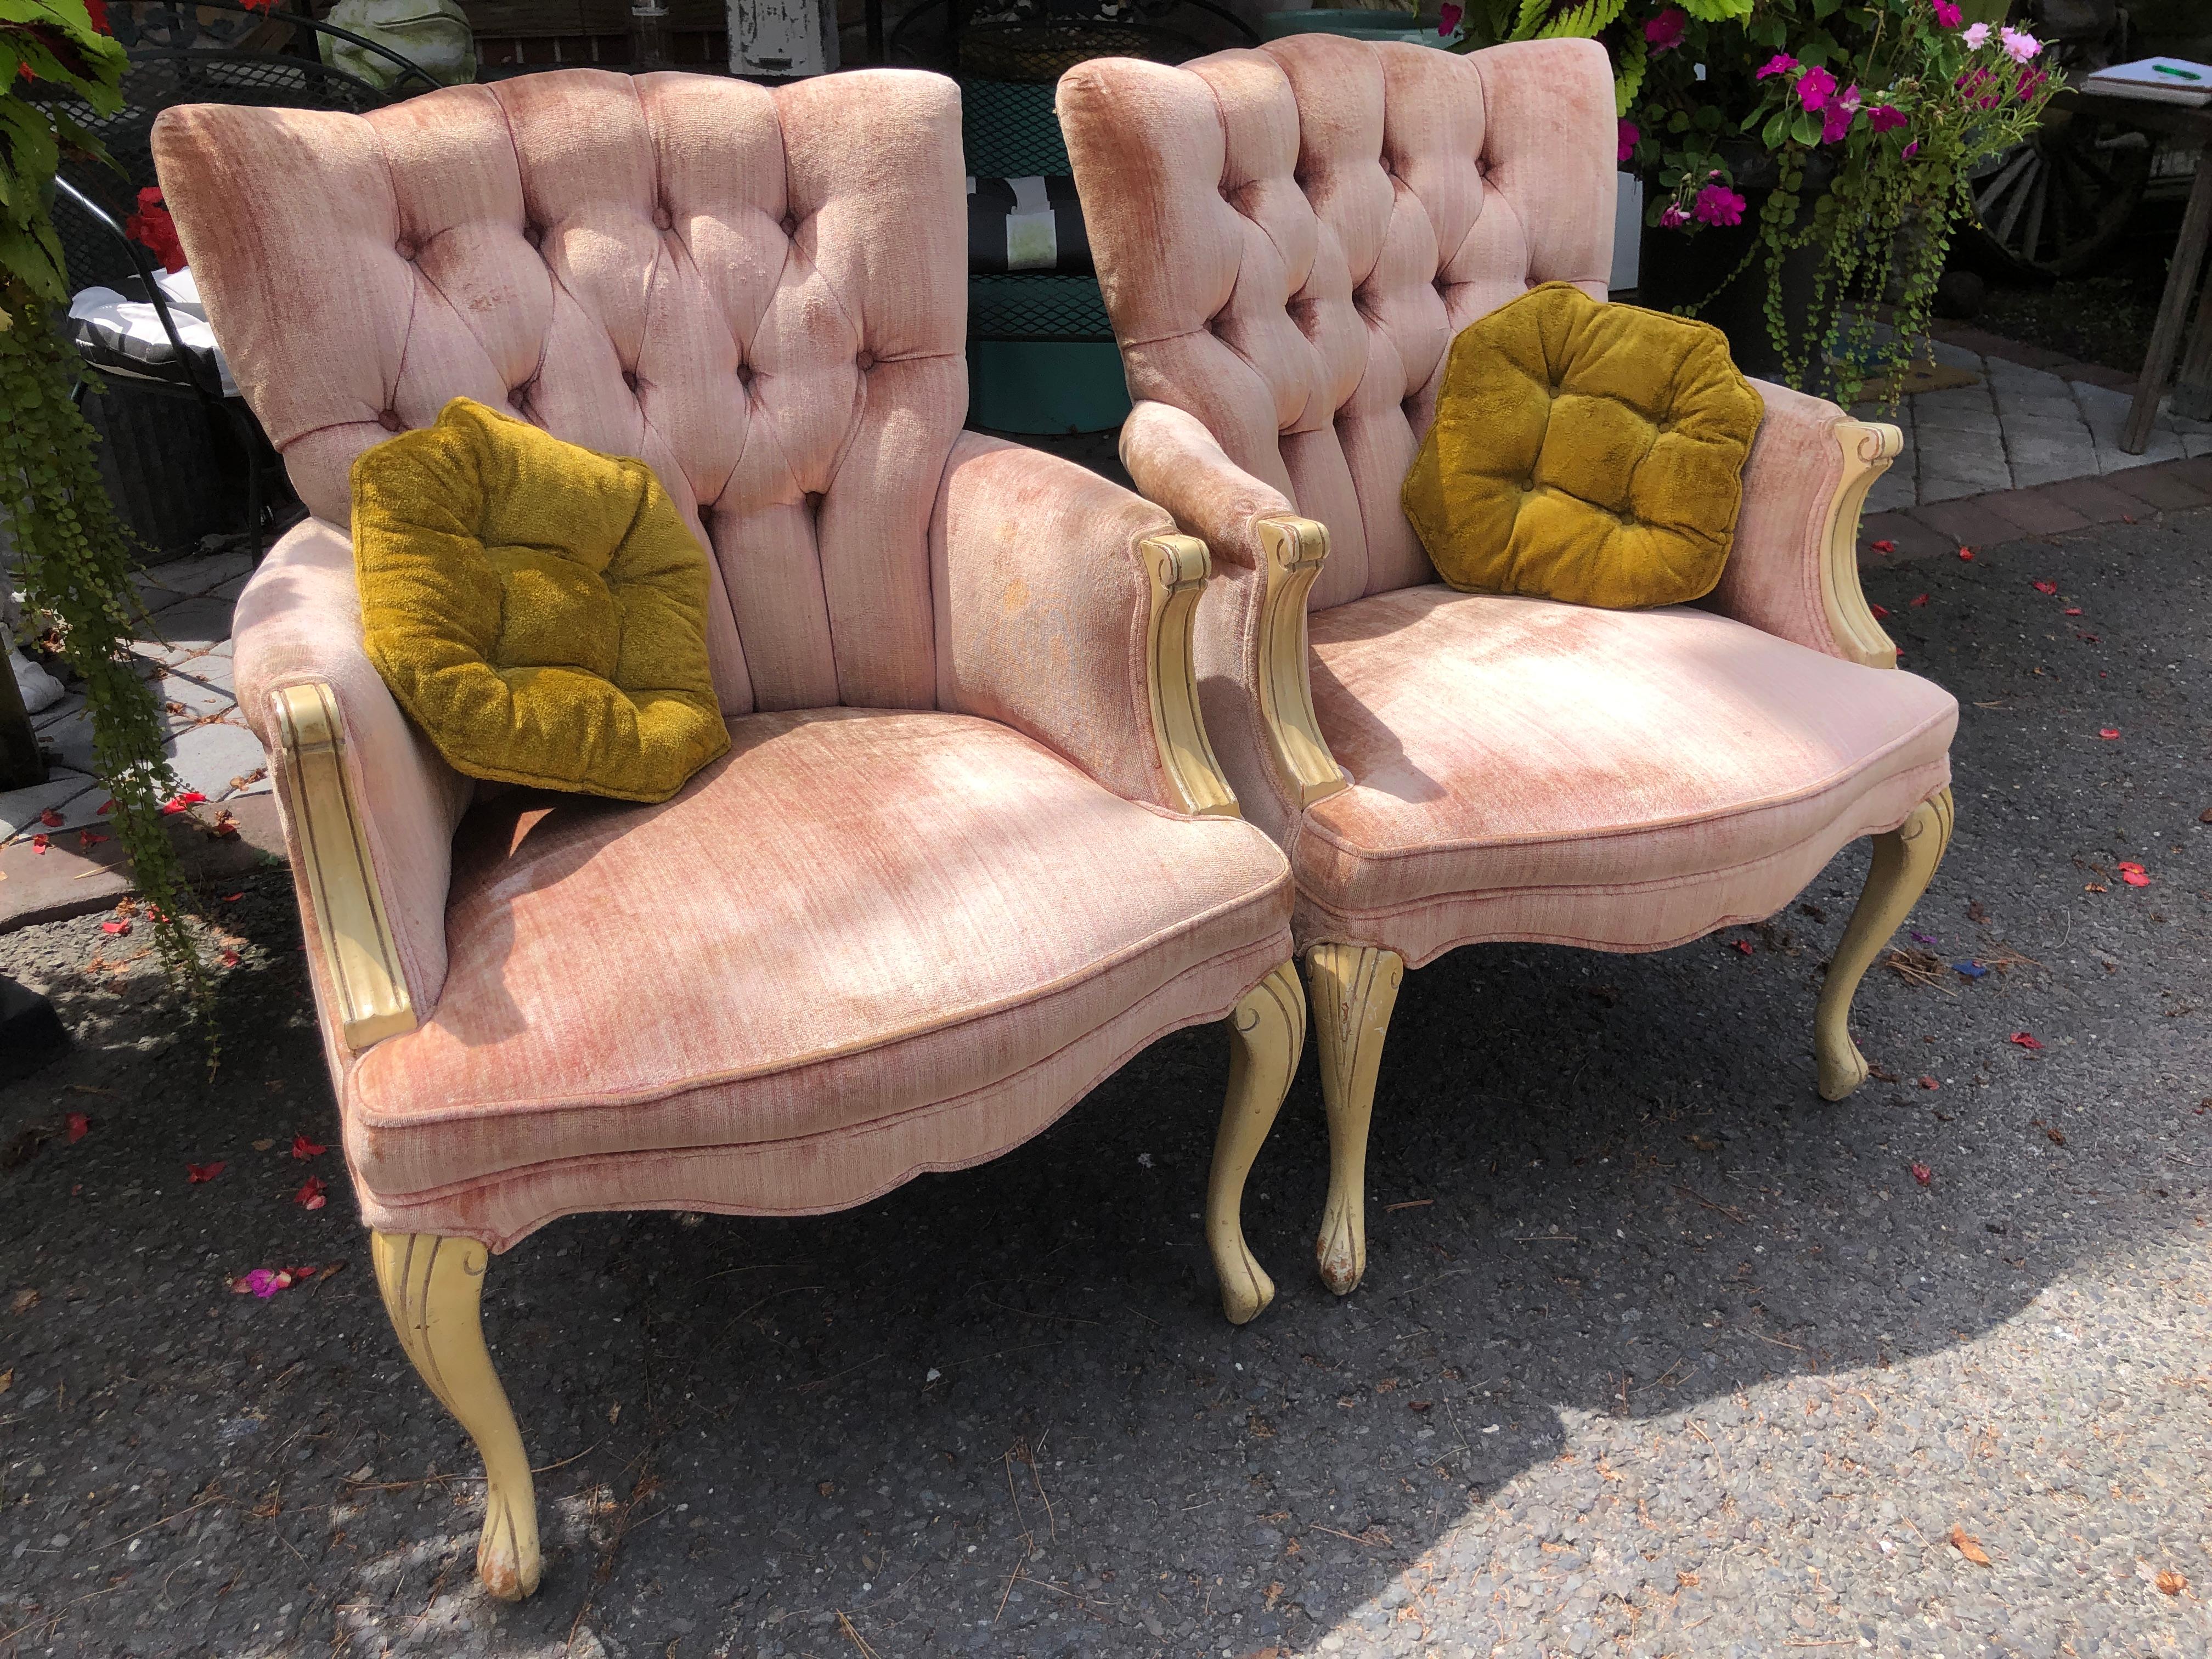 Charmante paire de fauteuils tapissés et rembourrés de style provincial français Dorothy Draper.  Les pieds et les accoudoirs présentent une finition glacée jaune vieillie qui confère à la chaise une charmante ambiance vintage.  Ils devront être